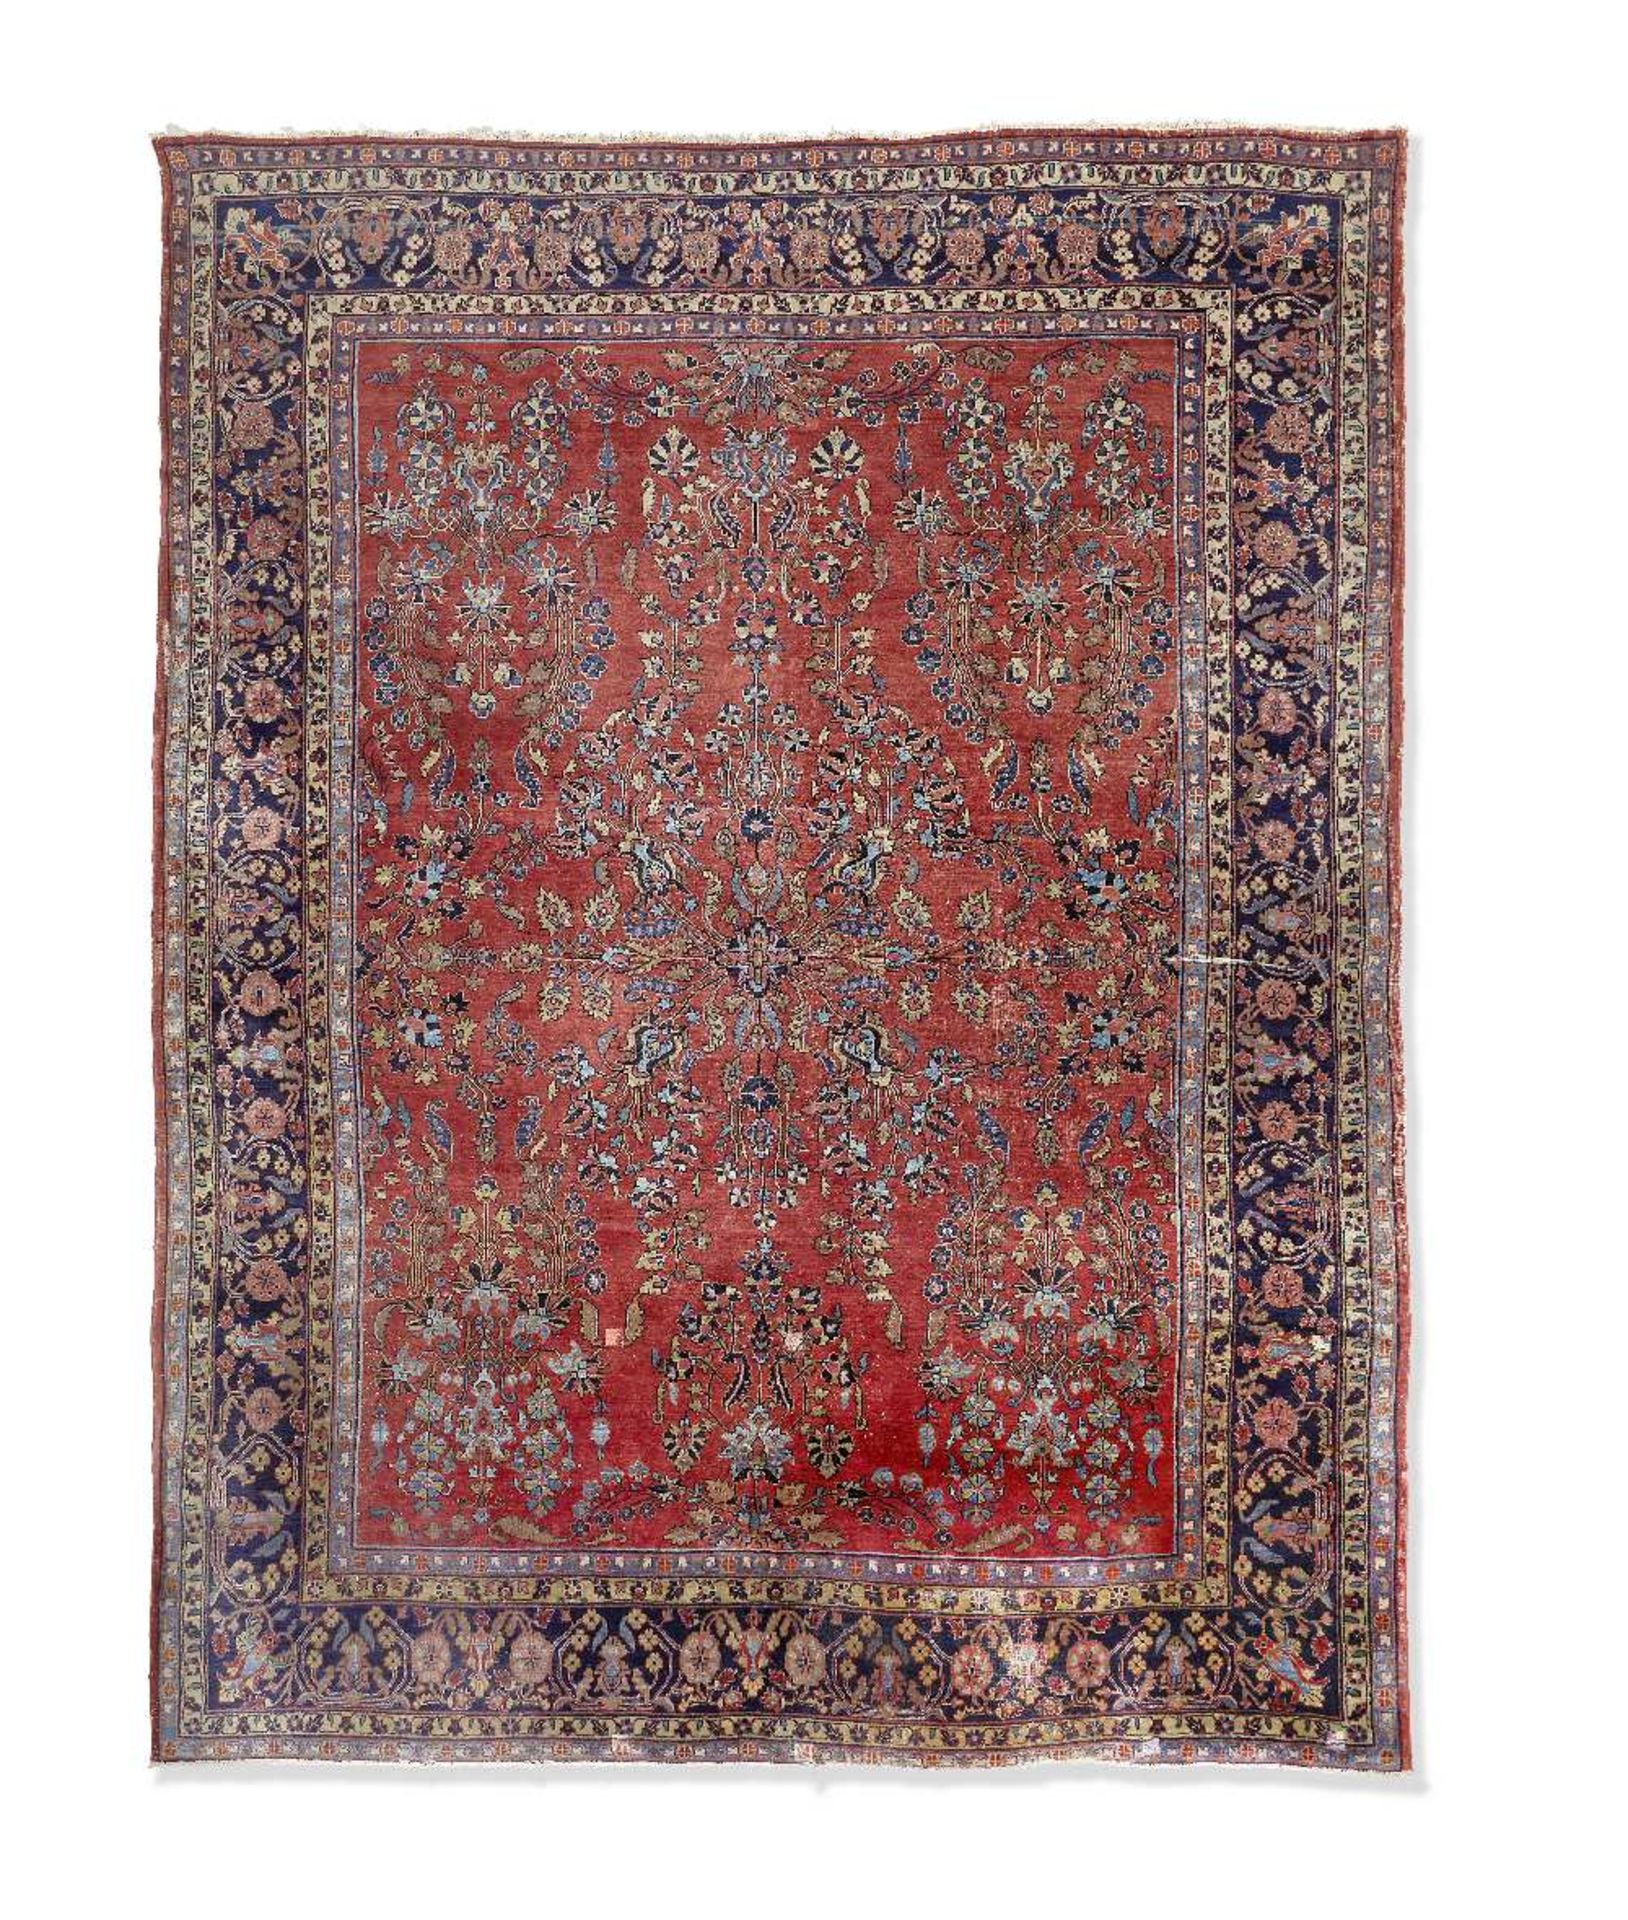 A Sarouk carpet West Persia 352cm x 257cm (138 1/2in x 101in)